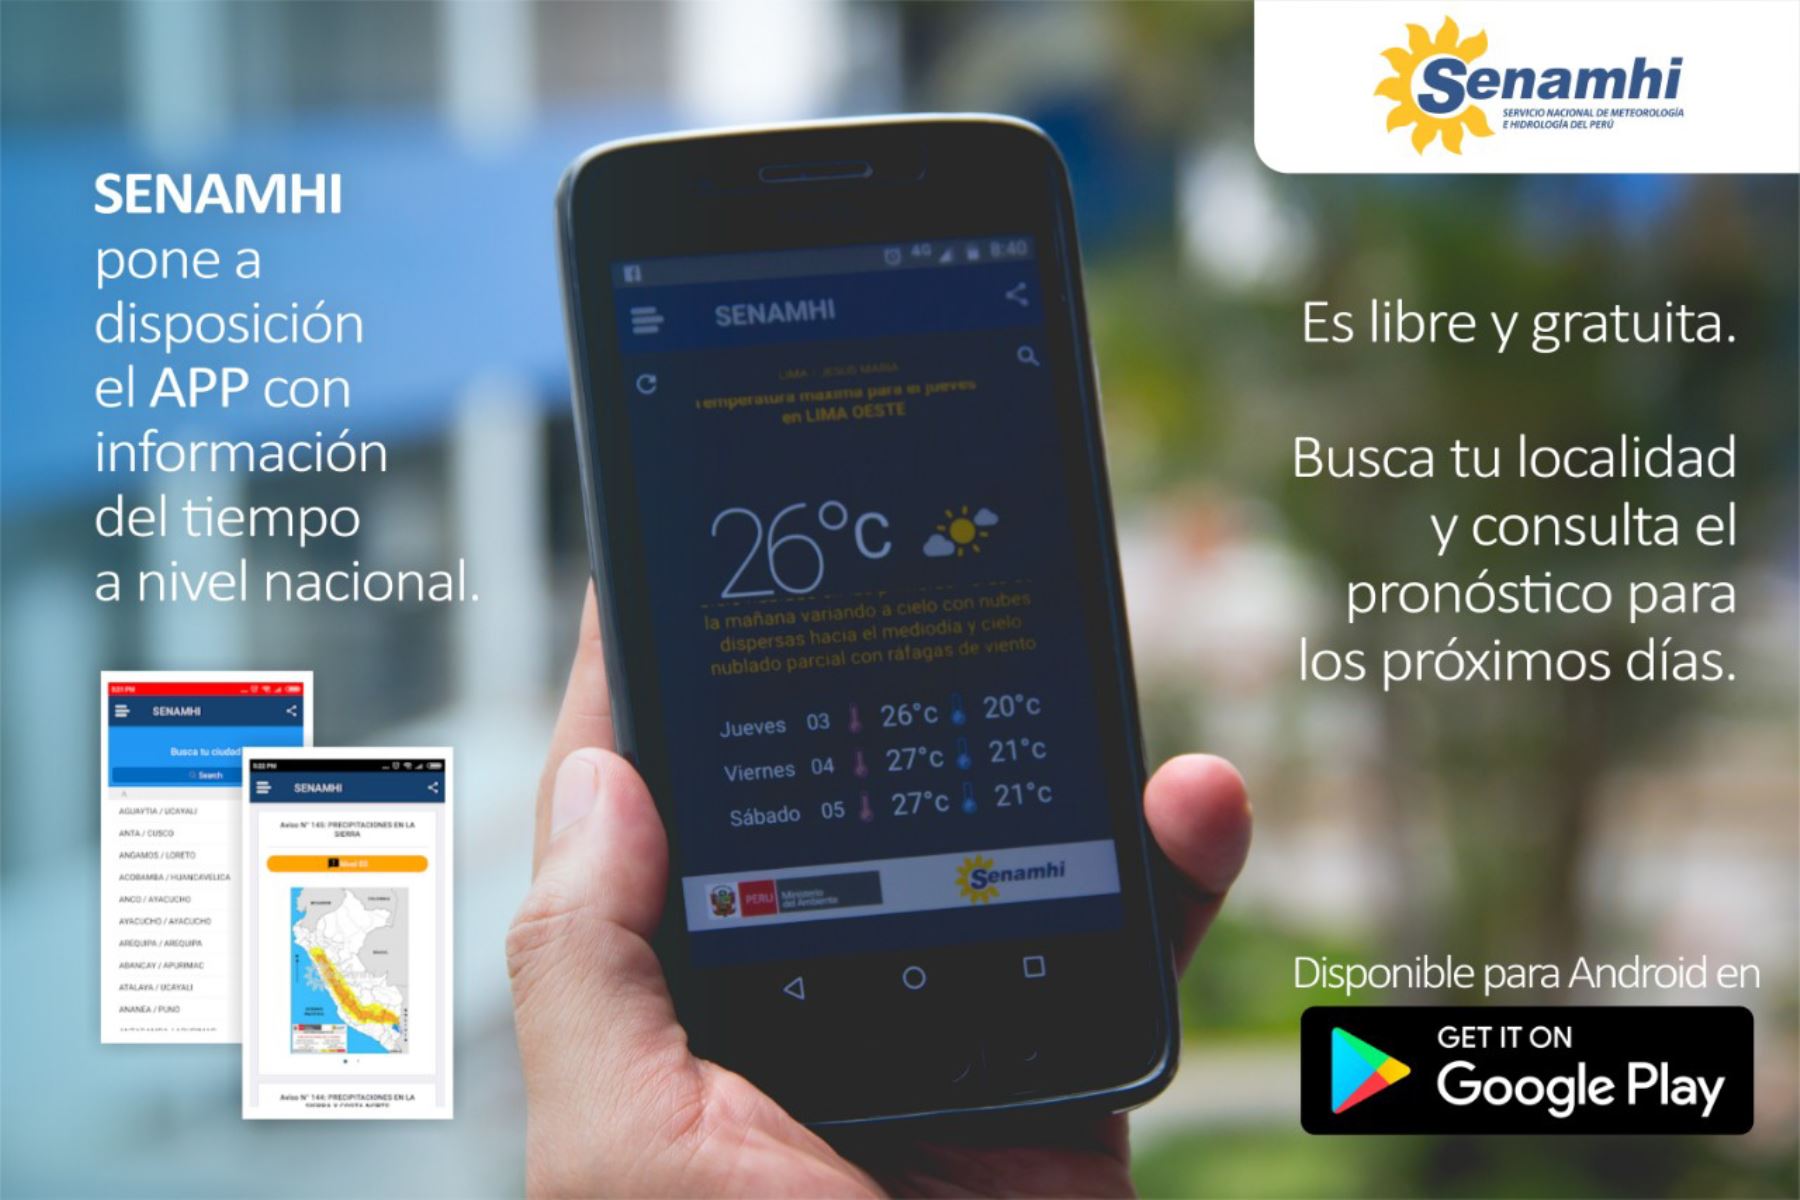 El Servicio Nacional de Meteorología e Hidrología del Perú (Senamhi) presentó su nueva aplicación para dispositivos móviles “Senamhi App”, la cual permite hacer consulta de los pronósticos del tiempo en cada uno de los departamentos del Perú.